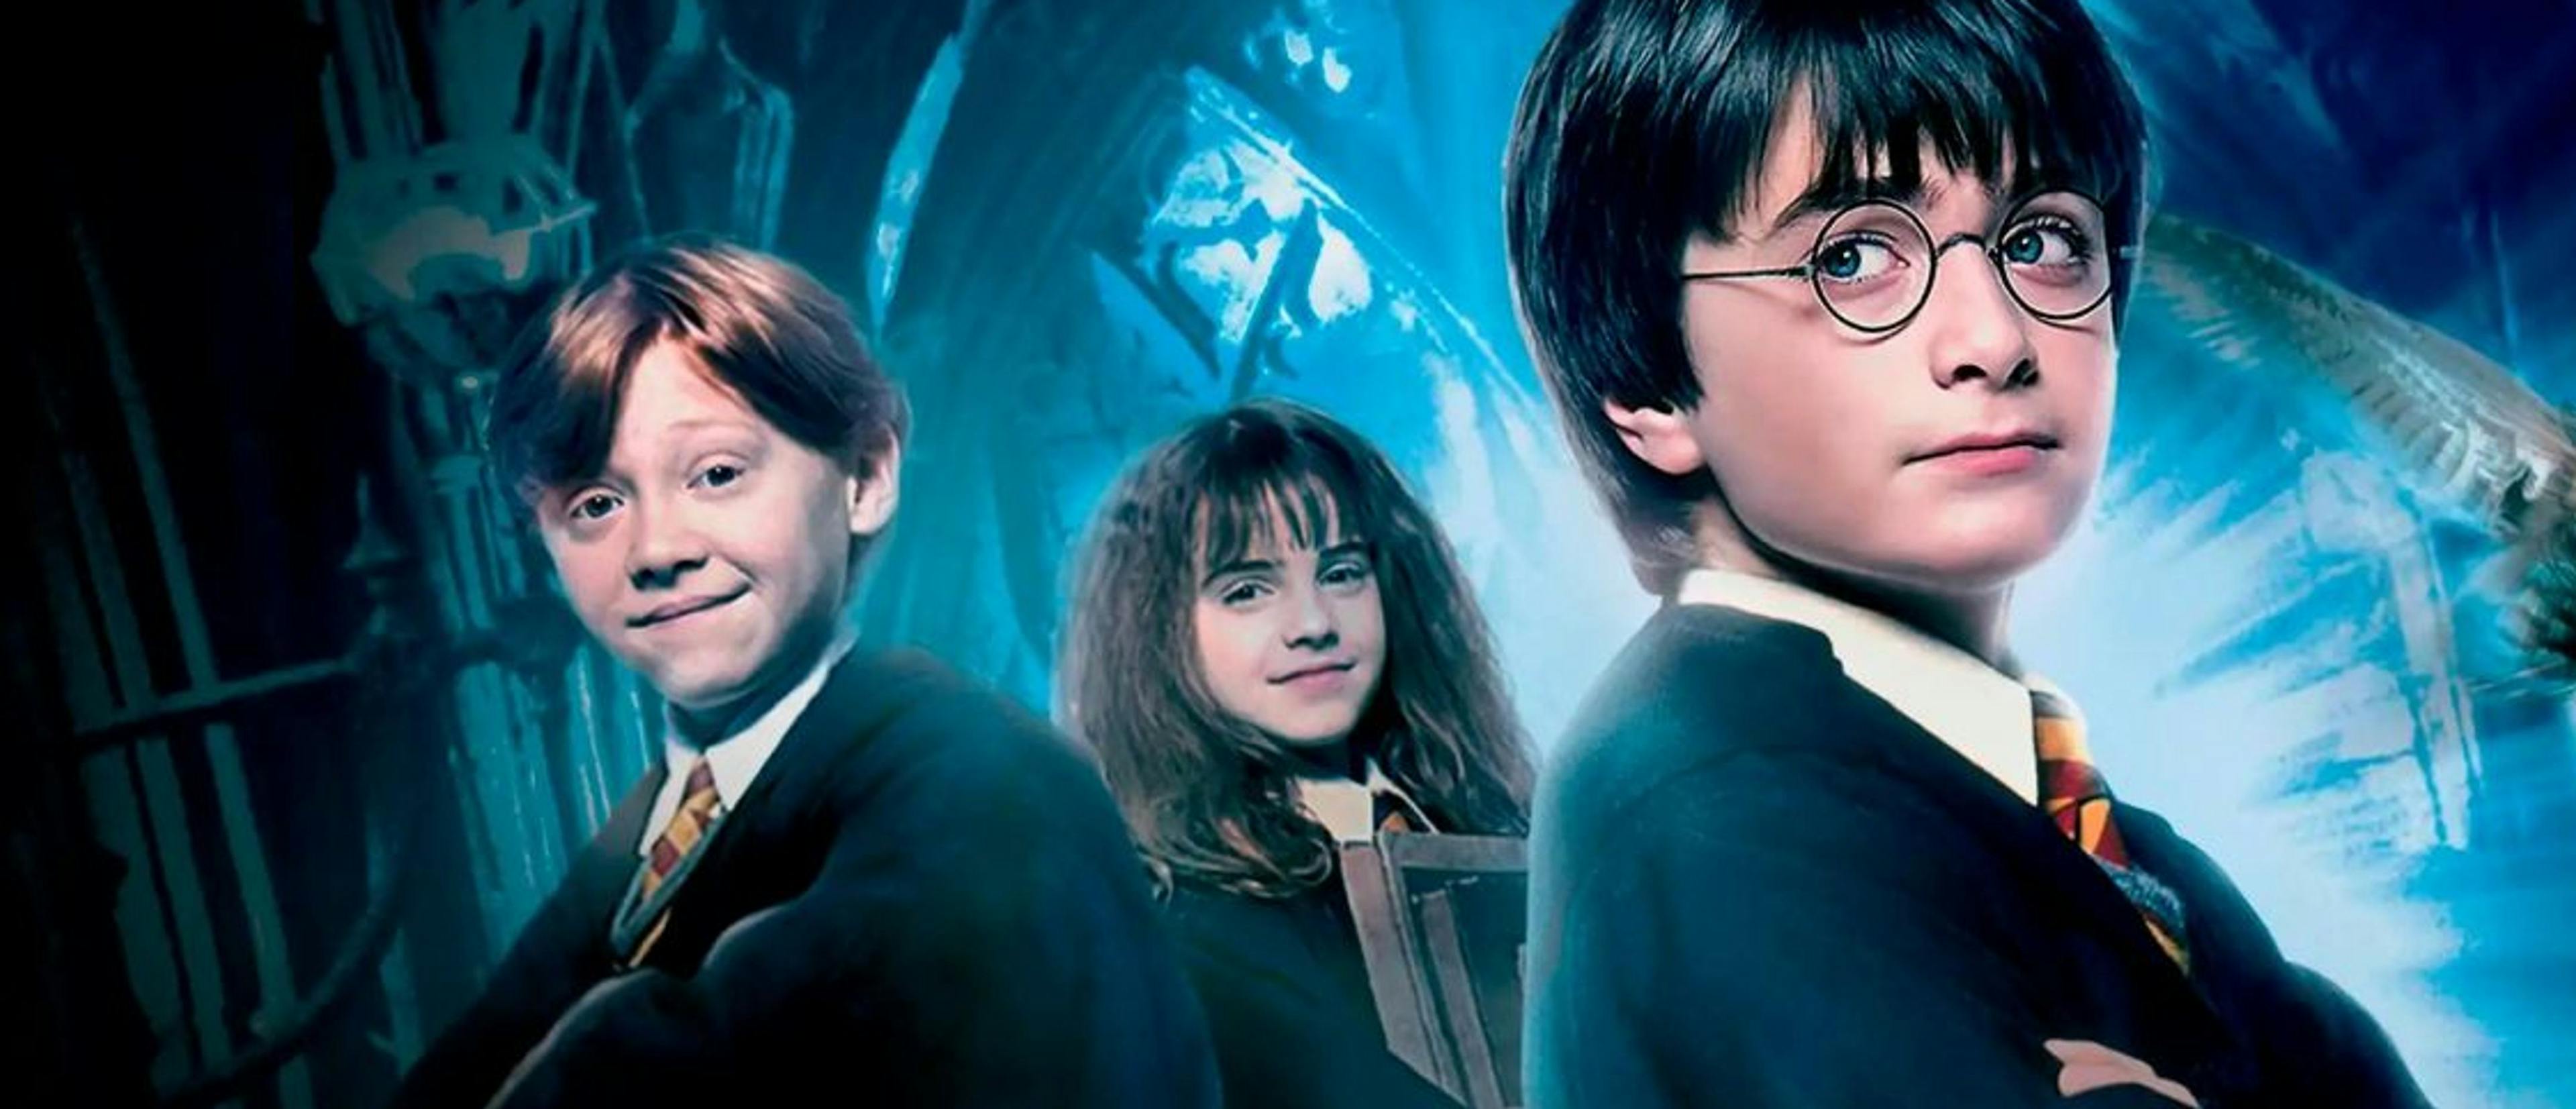 Póster de 'Harry Potter y la piedra filosofal' con Daniel Radcliffe, Rupert Grint y Emma Watson